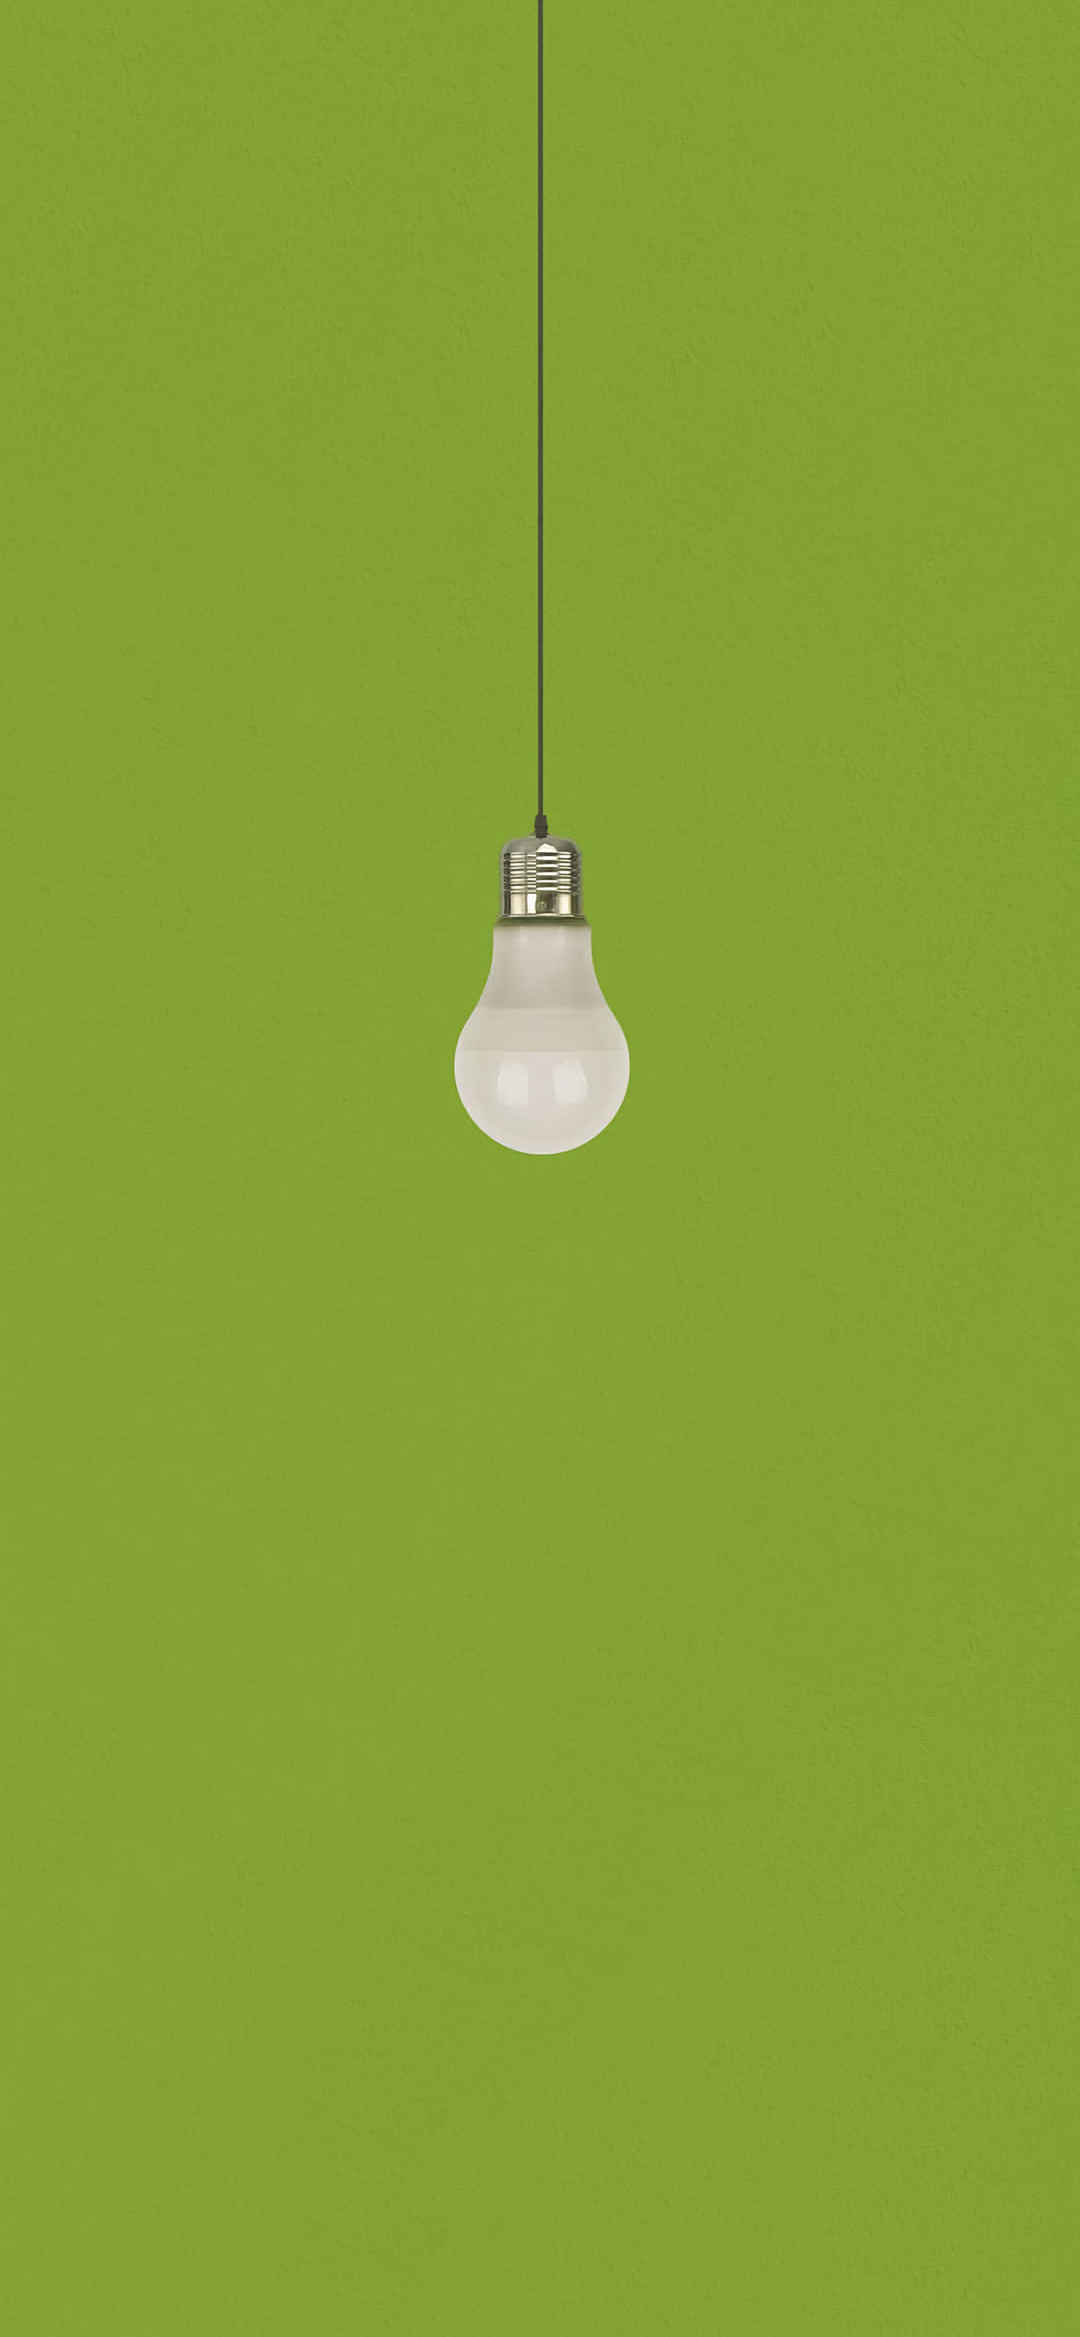 极简绿色背景灯泡创意质感壁纸-